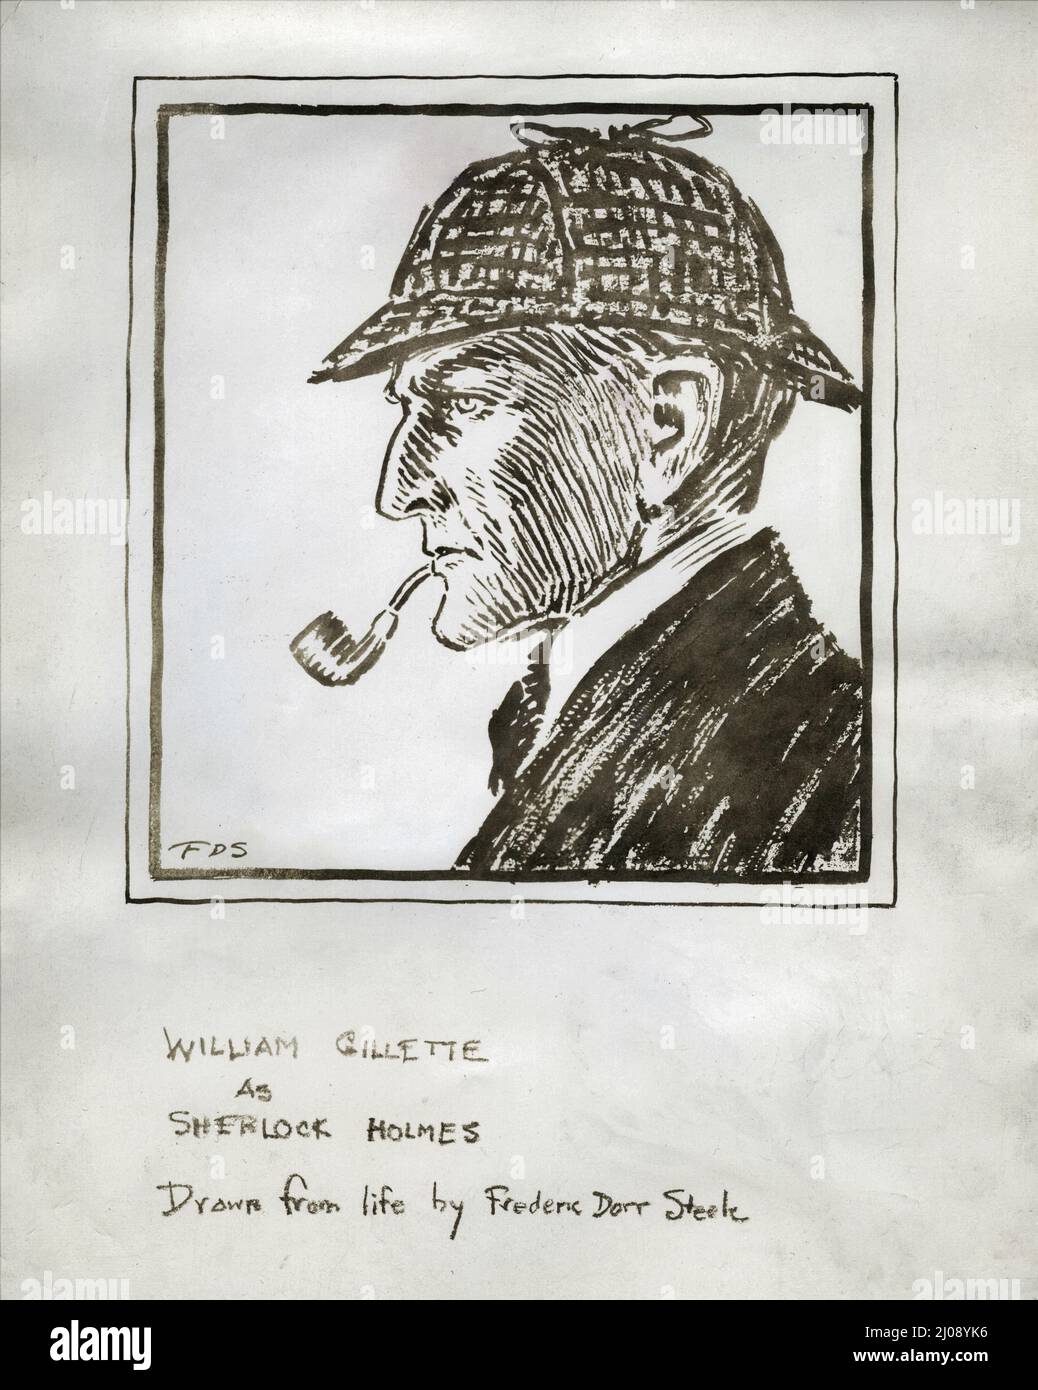 Dessin de WILLIAM GILLETTE comme SHERLOCK HOLMES tiré de la vie par l'illustrateur américain FREDERIC DORR STEELE (1973-1944) Banque D'Images